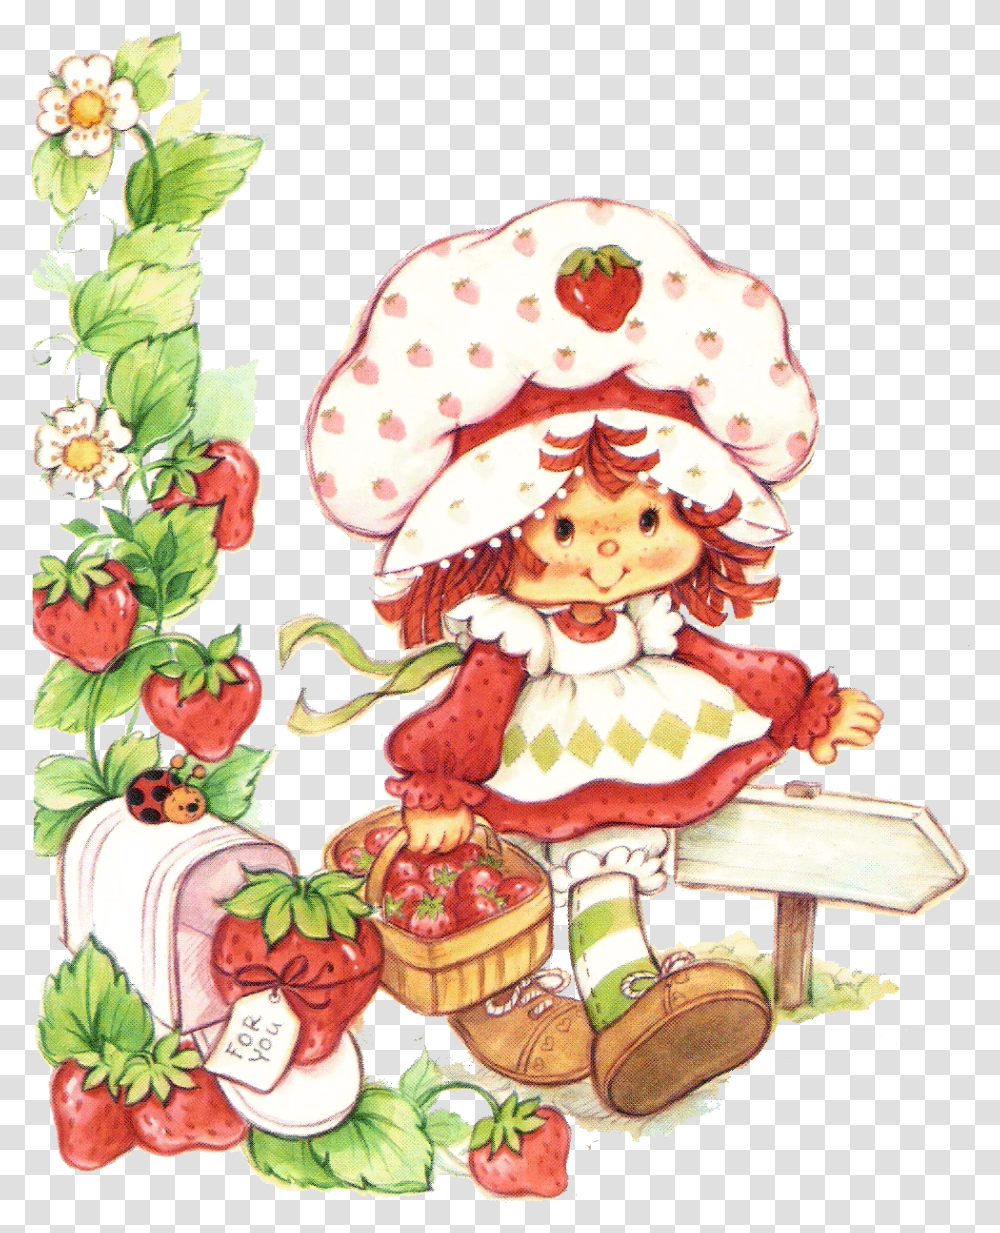 Vintage Strawberry Shortcake Bing Images On We Heart It Vintage Strawberry Shortcake, Plant, Flower, Wedding Cake, Food Transparent Png